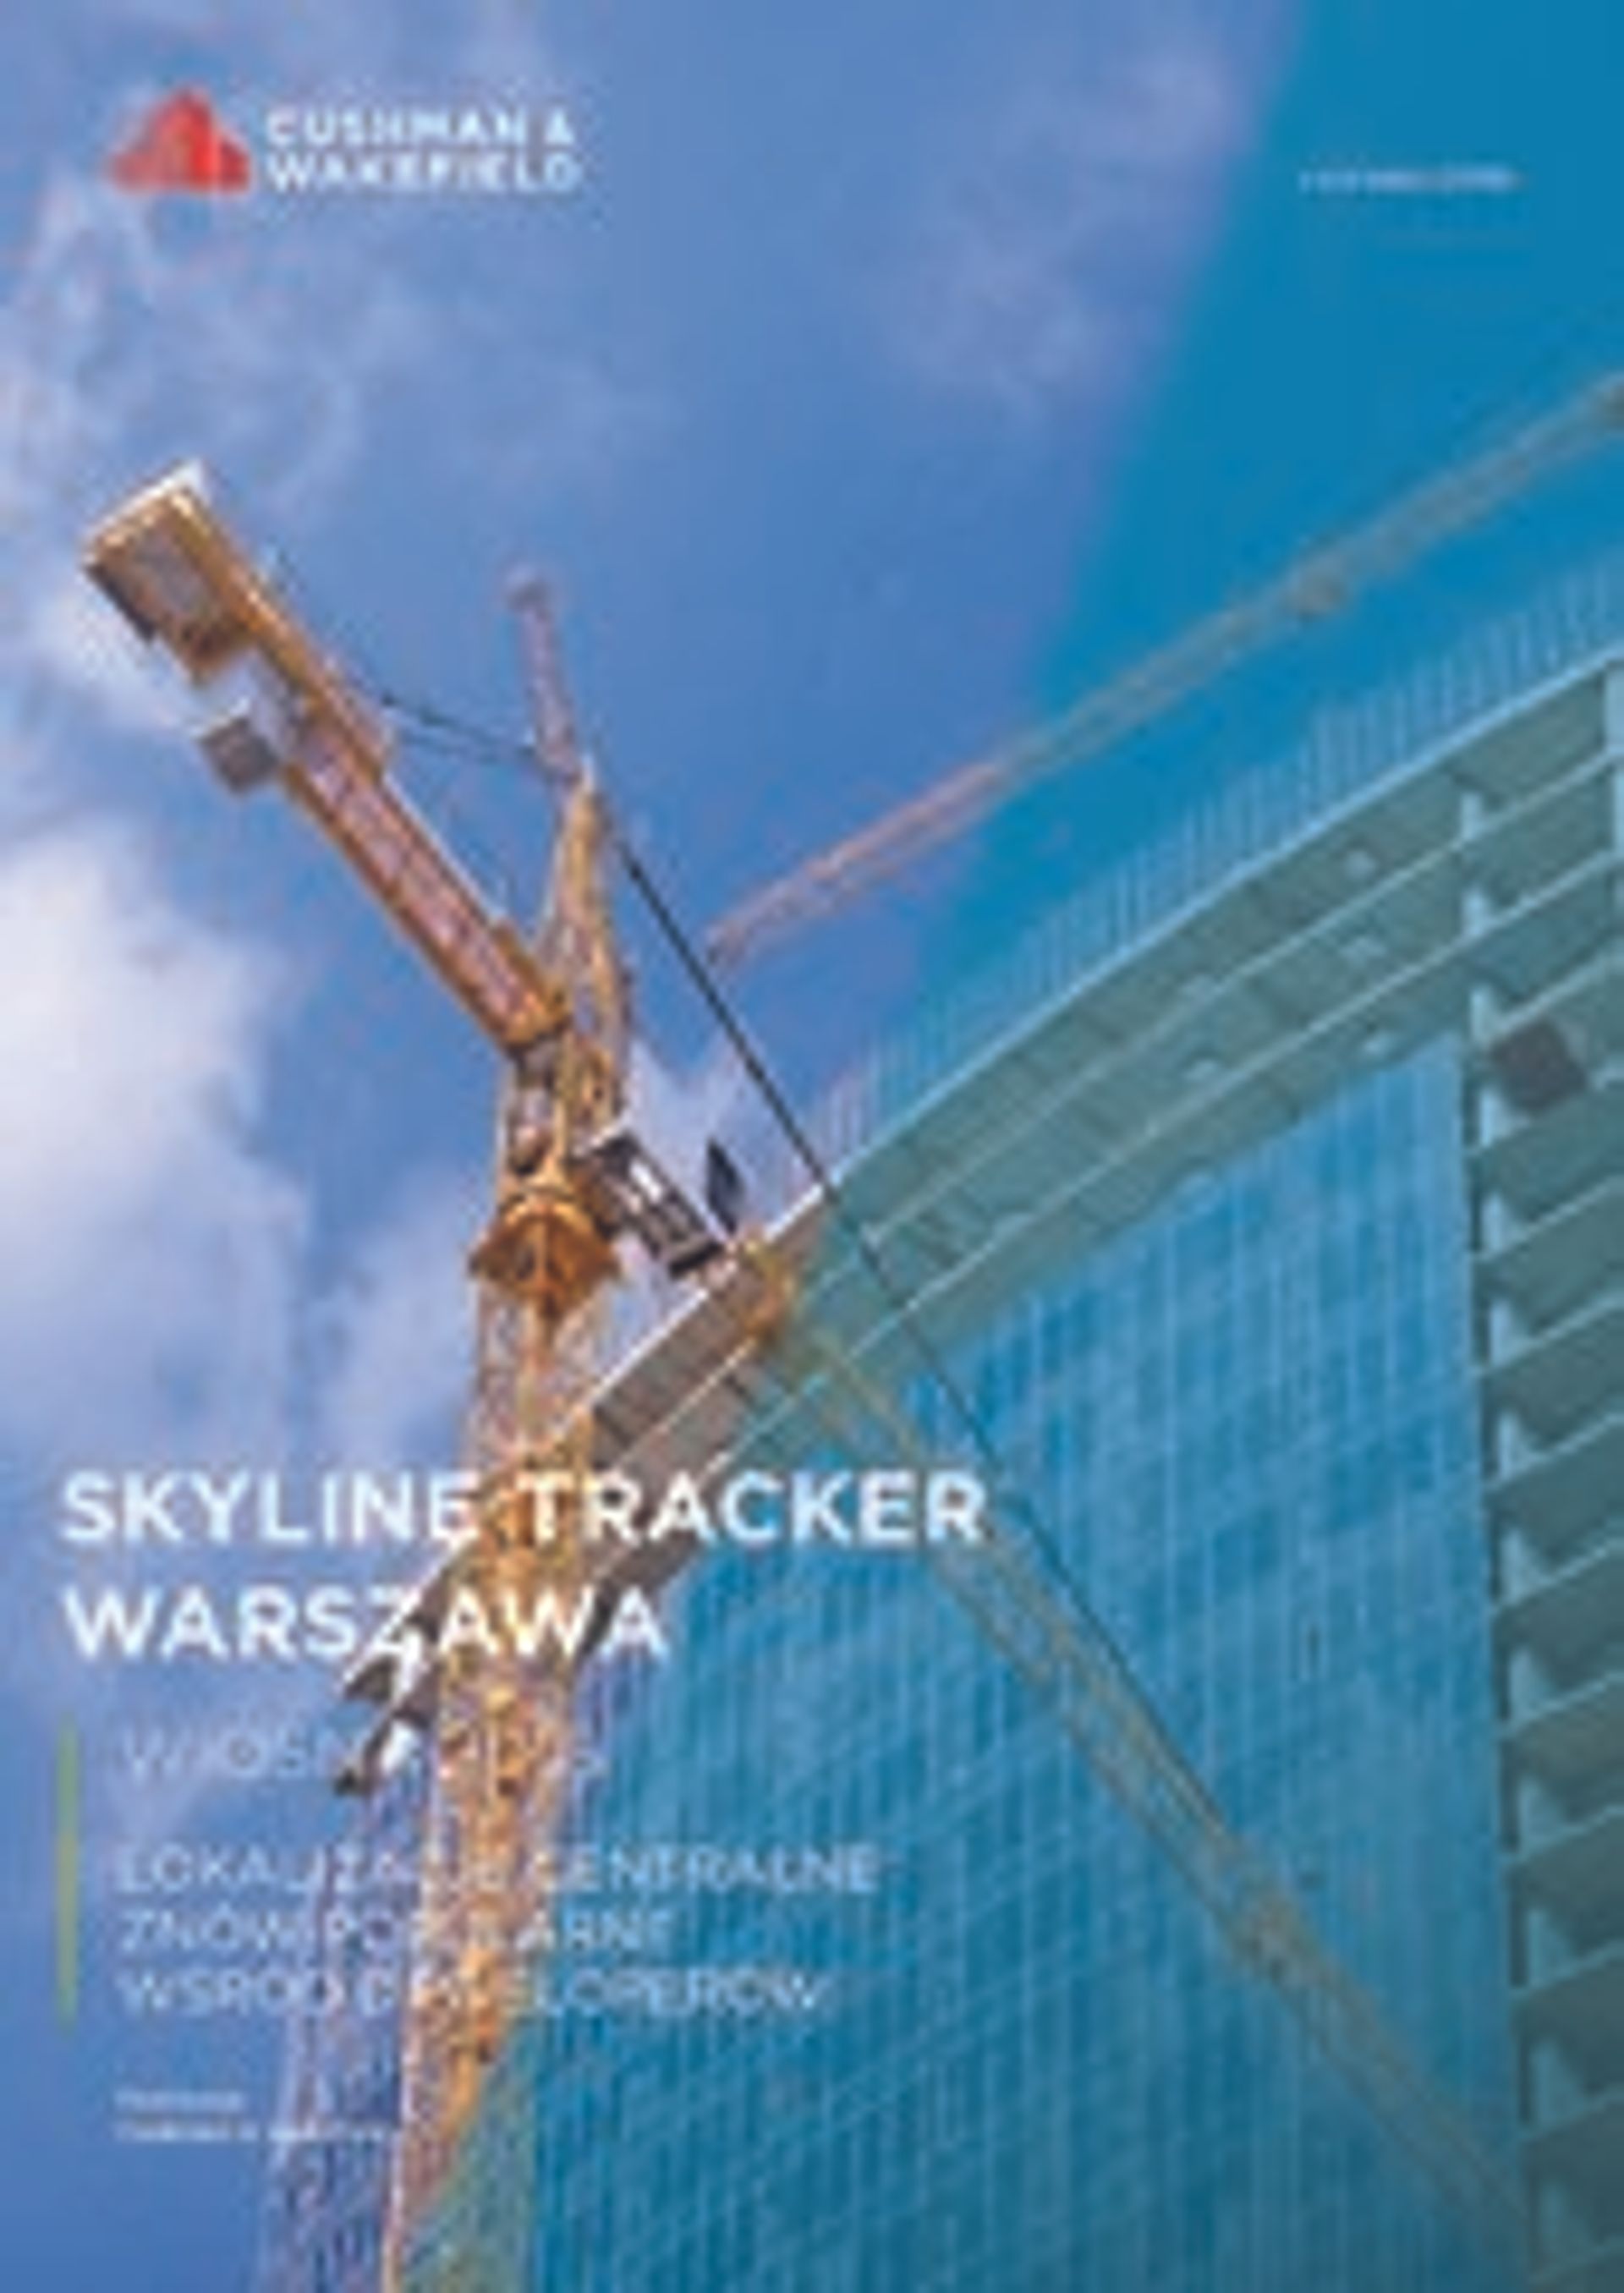  Lokalizacje centralne znów popularne wśród deweloperów – Cushman & Wakefield prezentuje raport „Skyline Tracker Warszawa – Wiosna 2016”